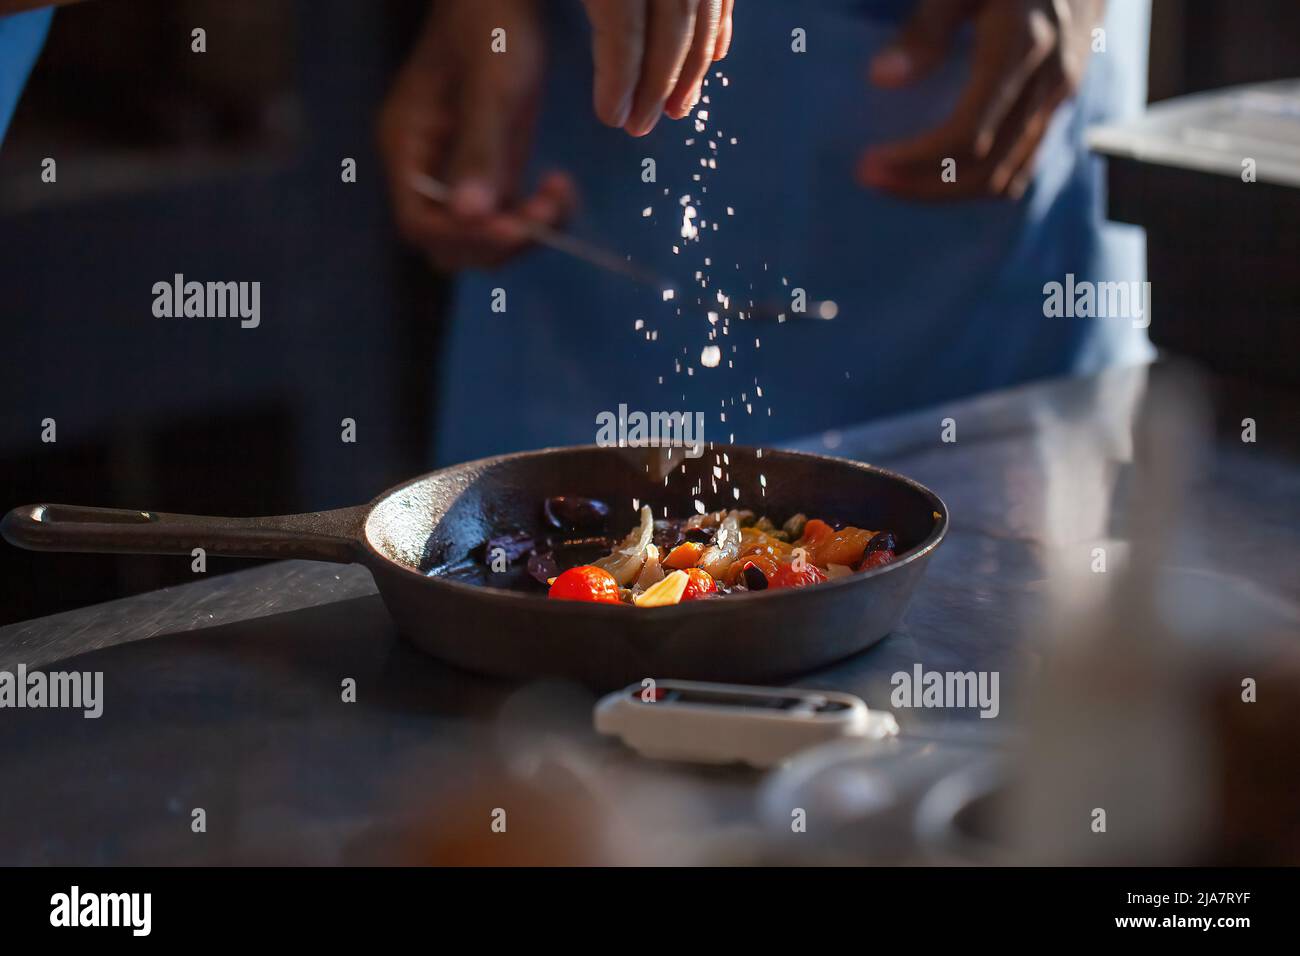 Le chef cuisinier prépare des légumes dans un restaurant de luxe ou dans la cuisine de l'hôtel. Les mains de l'homme ajoutent le sel dans les légumes rôtis dans la casserole. Cuisinier professionnel en uniforme Banque D'Images